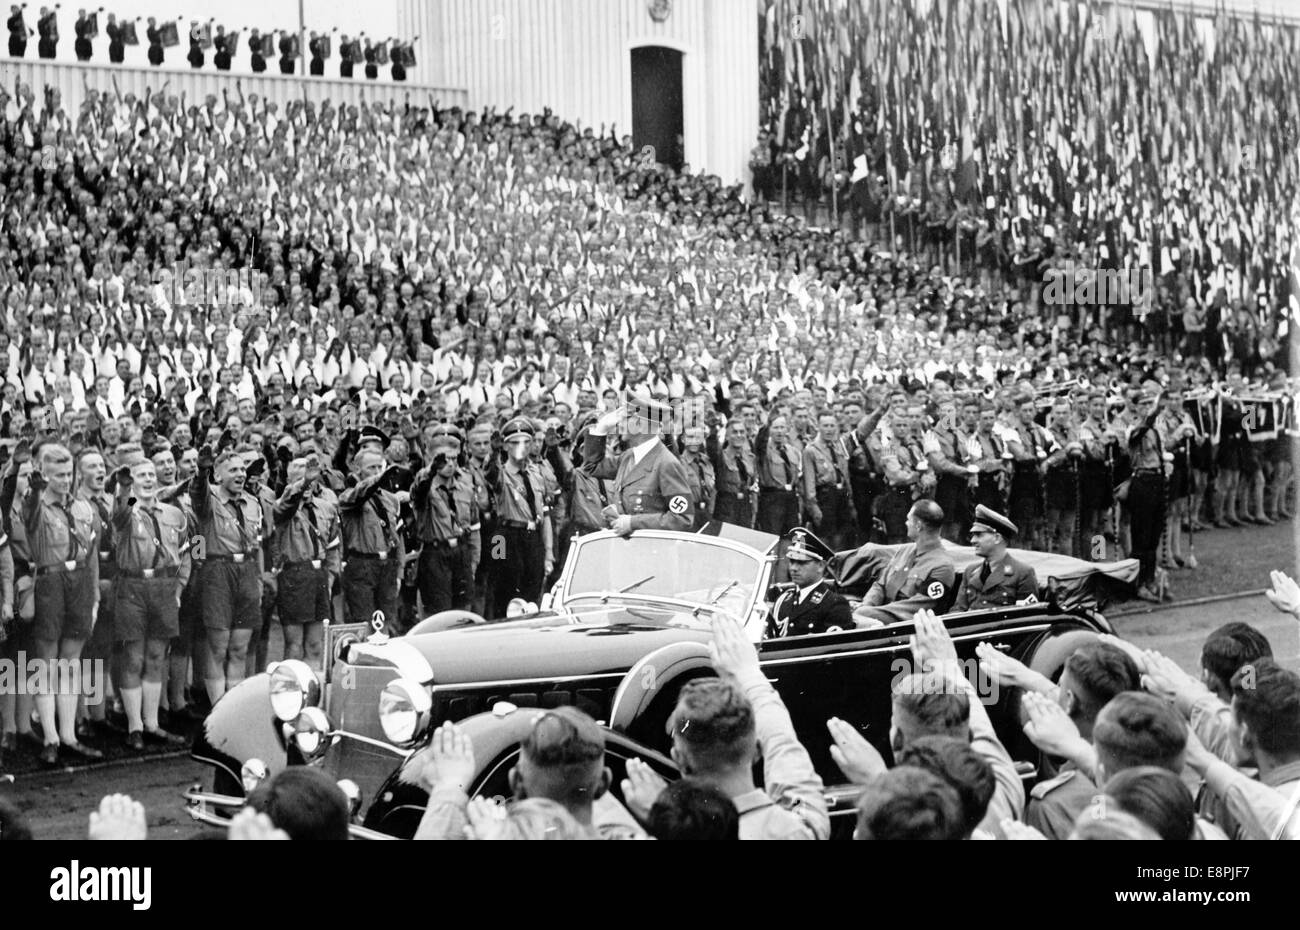 Rally di Norimberga 1938 a Norimberga, Germania - Adolf Hitler guida il passato e saluta i membri della Gioventù Hitler in occasione del roll call della Gioventù Hitler (HJ) presso lo 'Stadio della Gioventù Hitler' presso il raduno nazista. (Difetti di qualità dovuti alla copia storica dell'immagine) Fotoarchiv für Zeitgeschichtee - NESSUN SERVIZIO DI CABLAGGIO - Foto Stock